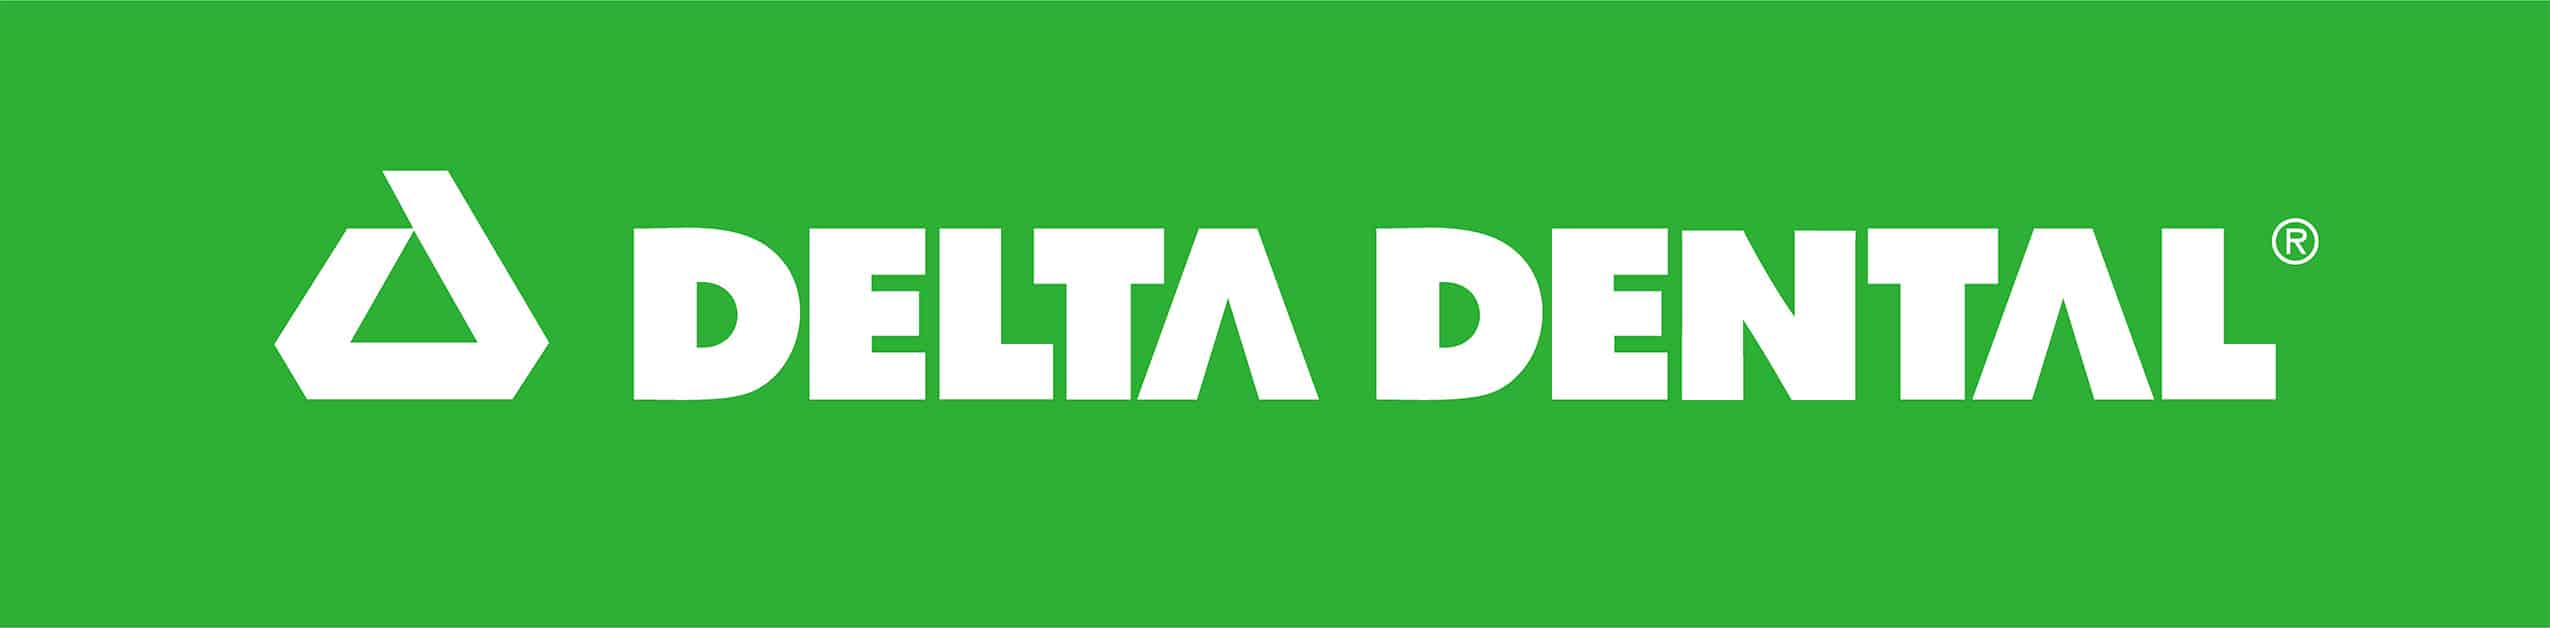 Delta Dental Missouri logo